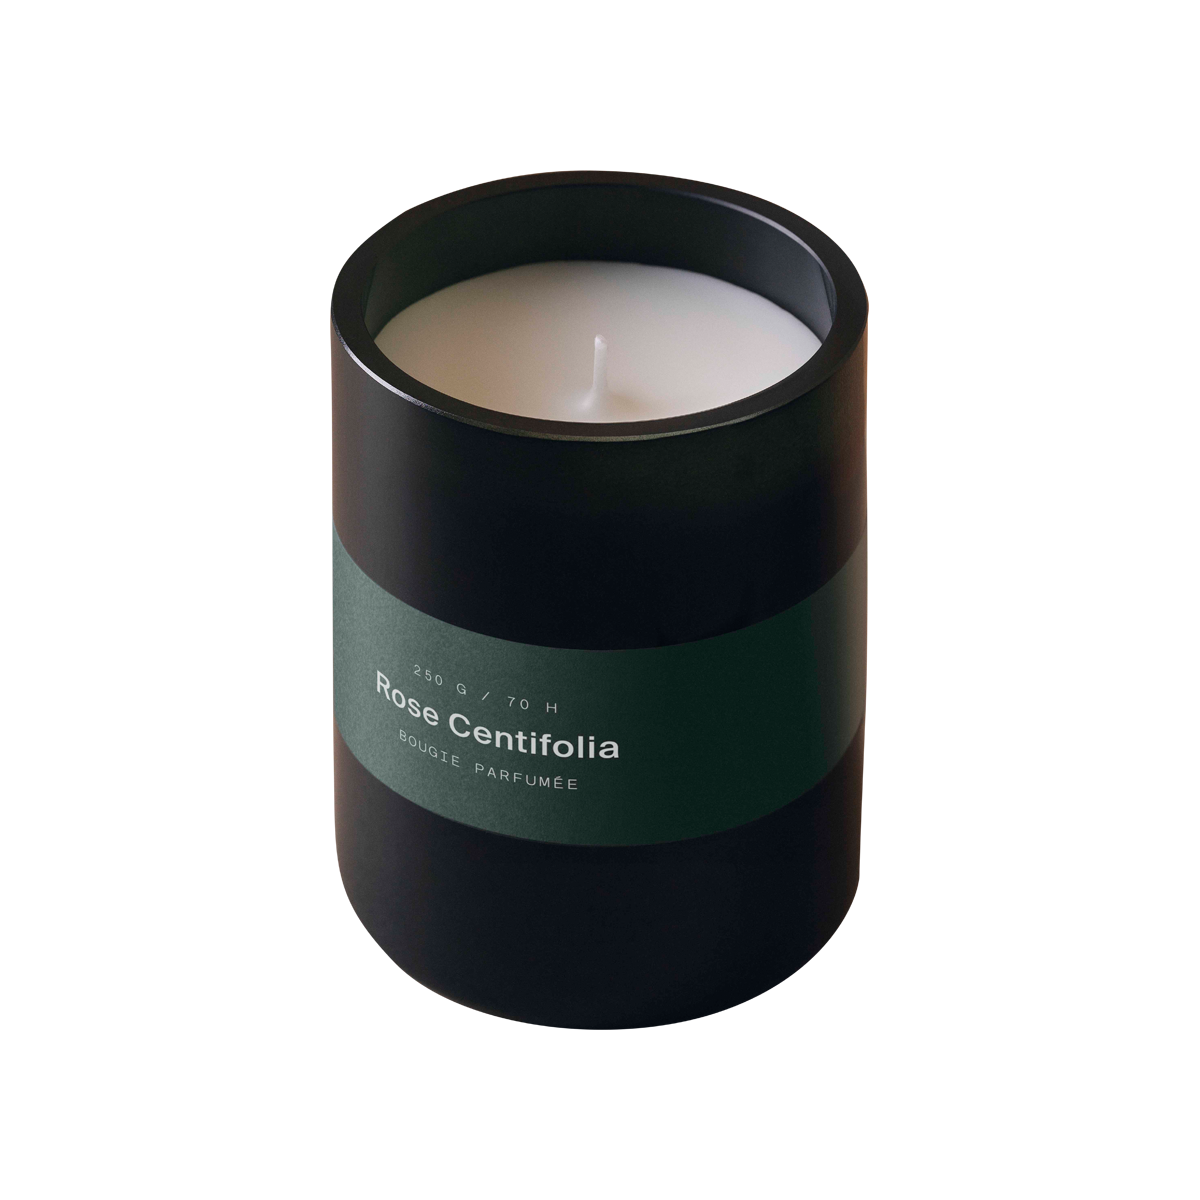 MarieJeanne - Rose Centifolia Candle